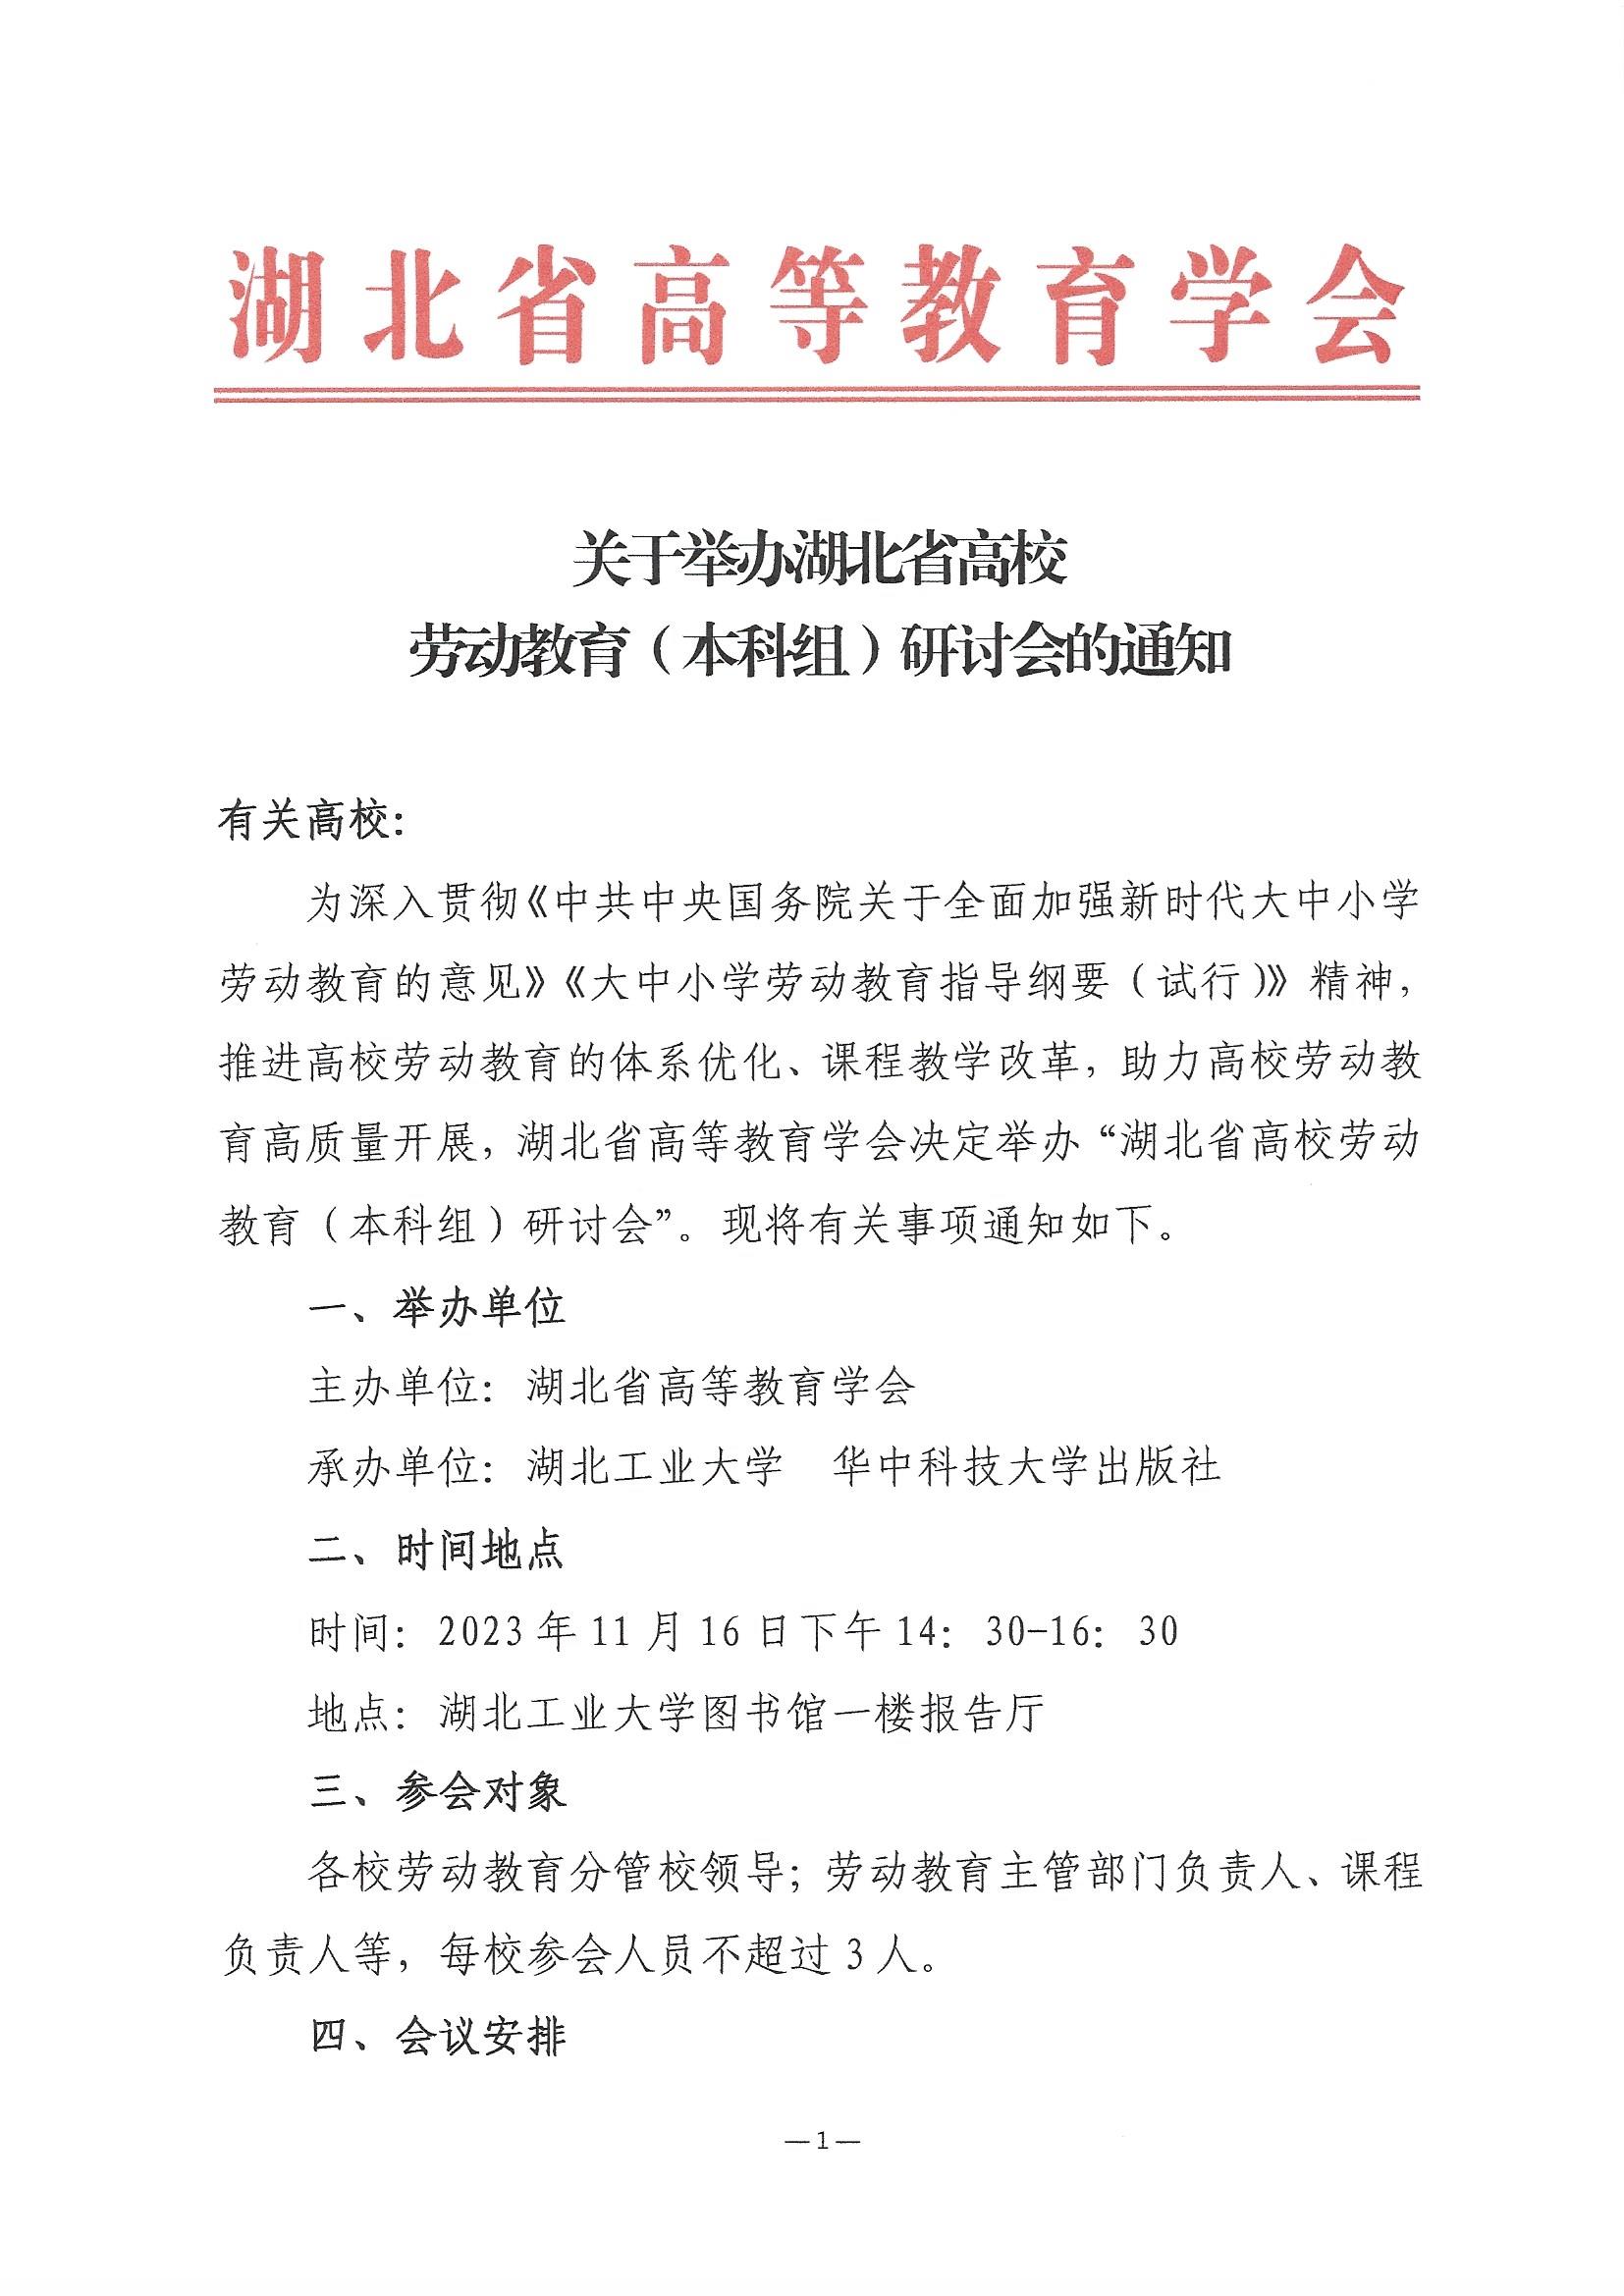 关于举办湖北省高校劳动教育（本科组）研讨会的通知 (2)_页面_1.jpg